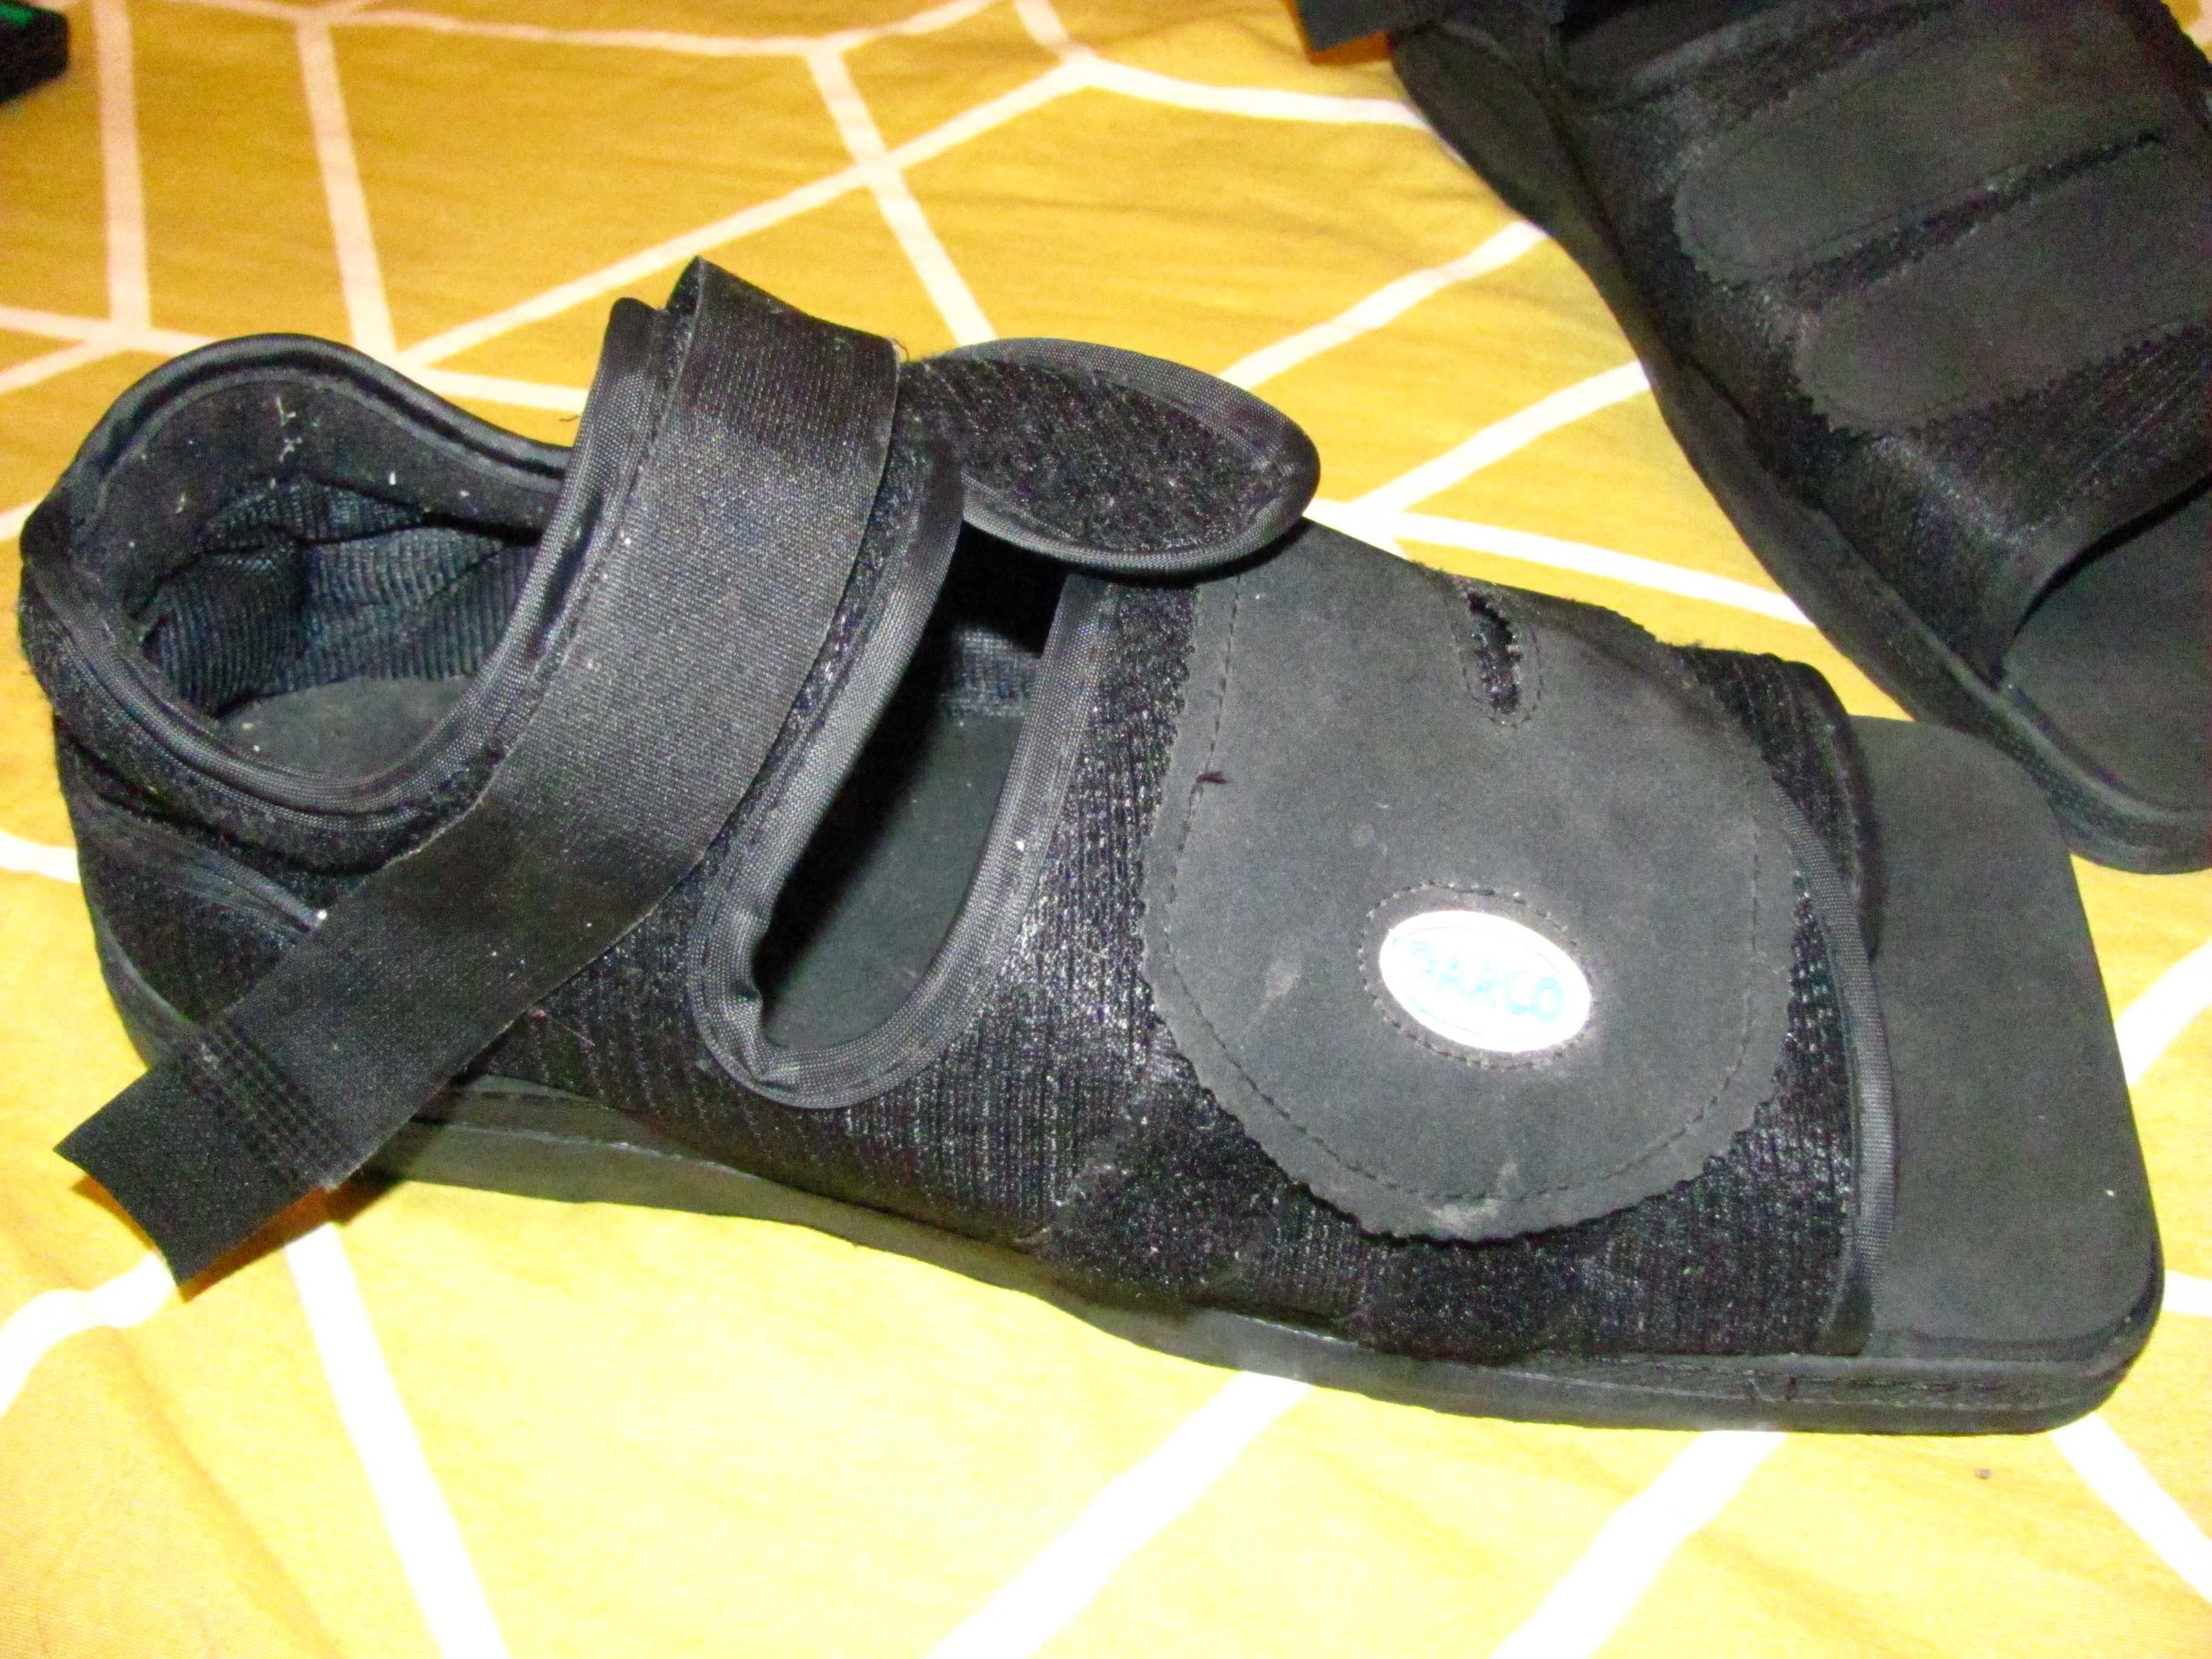 Післяопераційне взуття darco usa, під гіпс чи хворі ноги 29 см